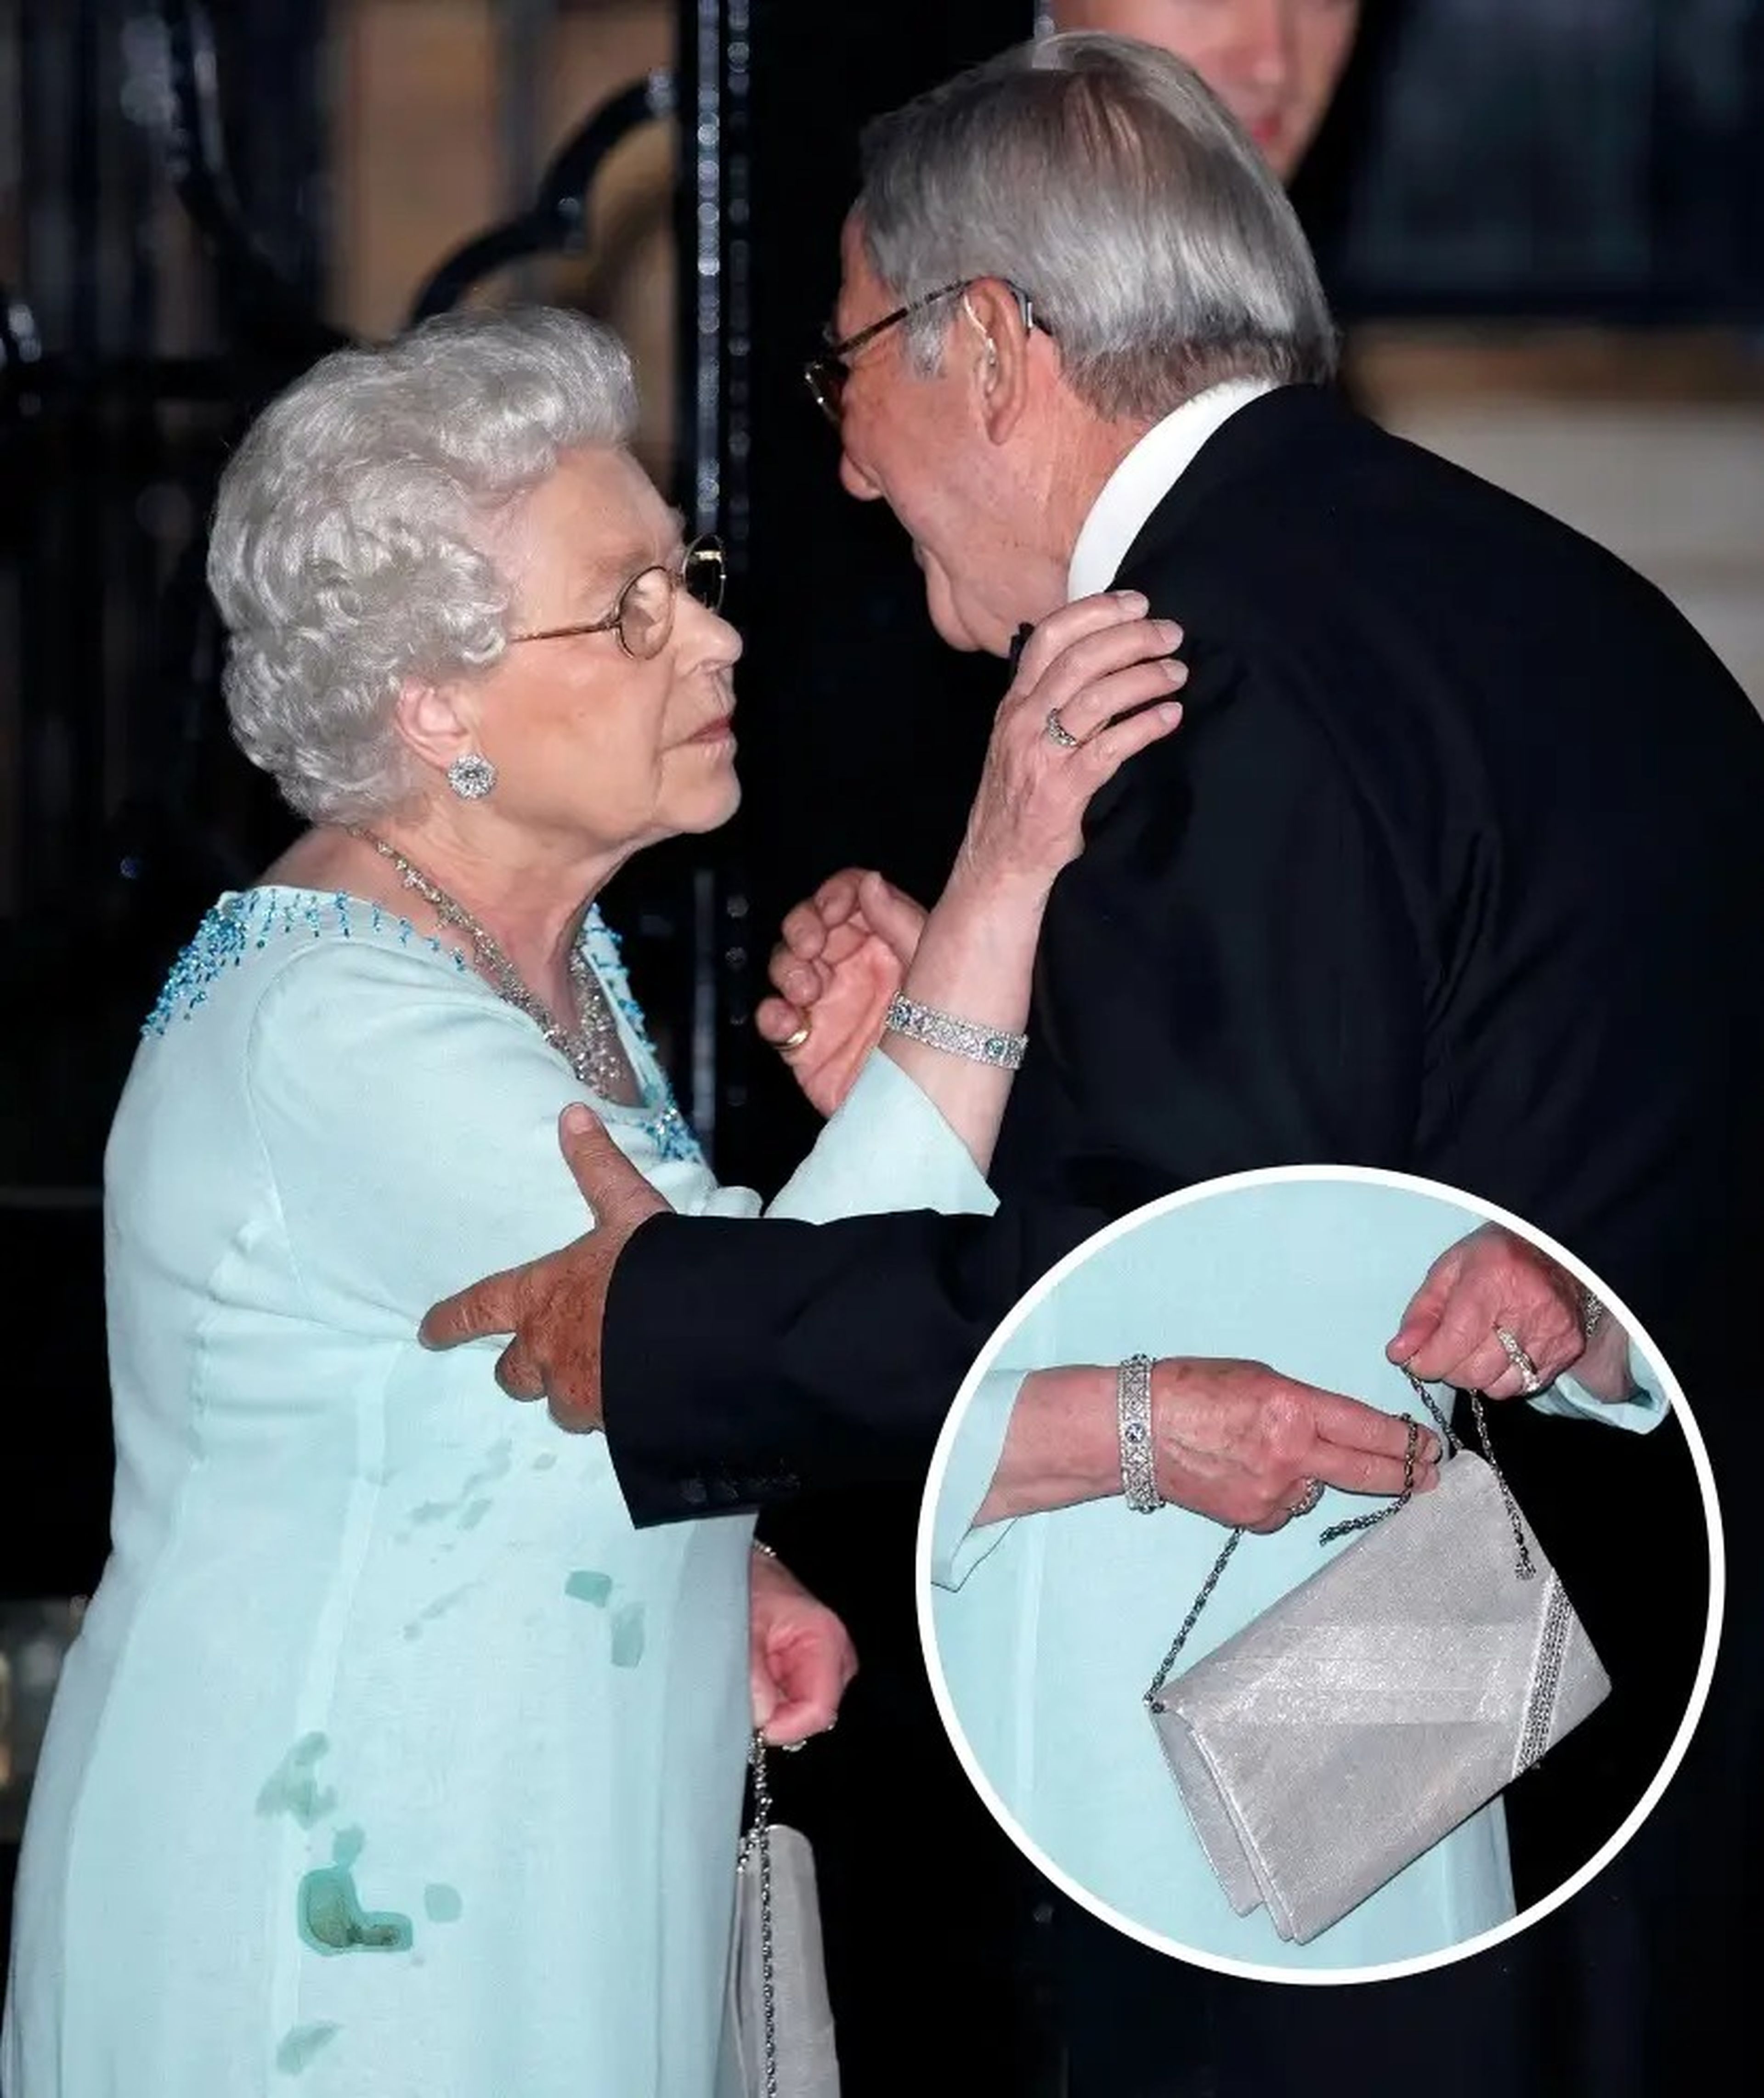 La Reina llevó vestido manchado y un bolso roto en 2010.